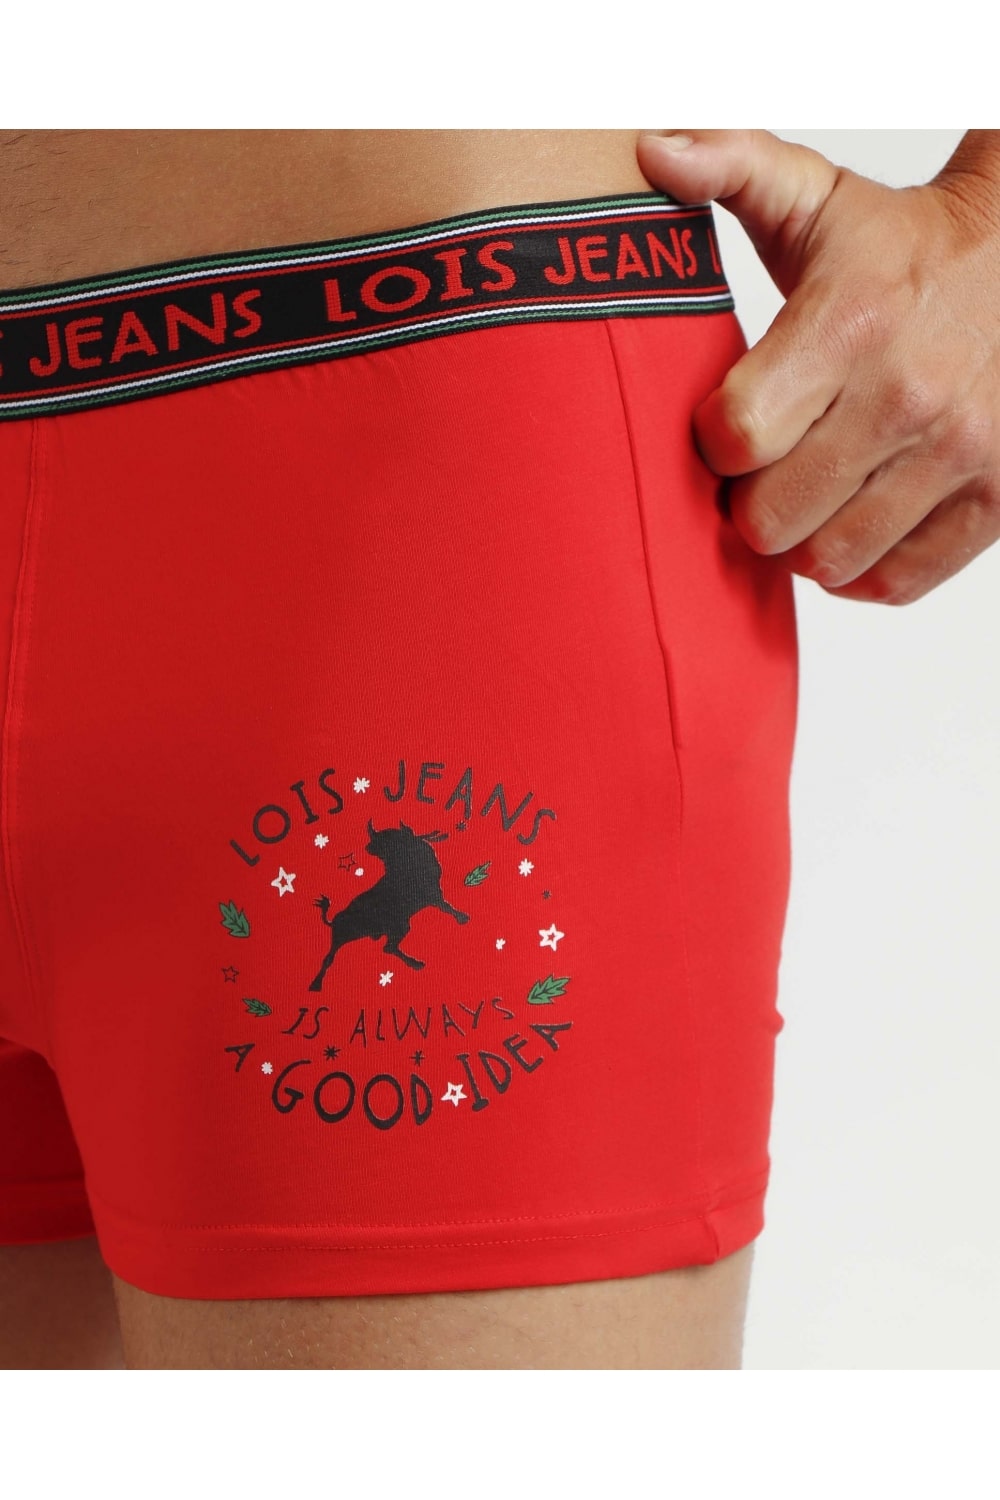 Calzoncillos boxer rojos, especial navidad, ysabel mora.